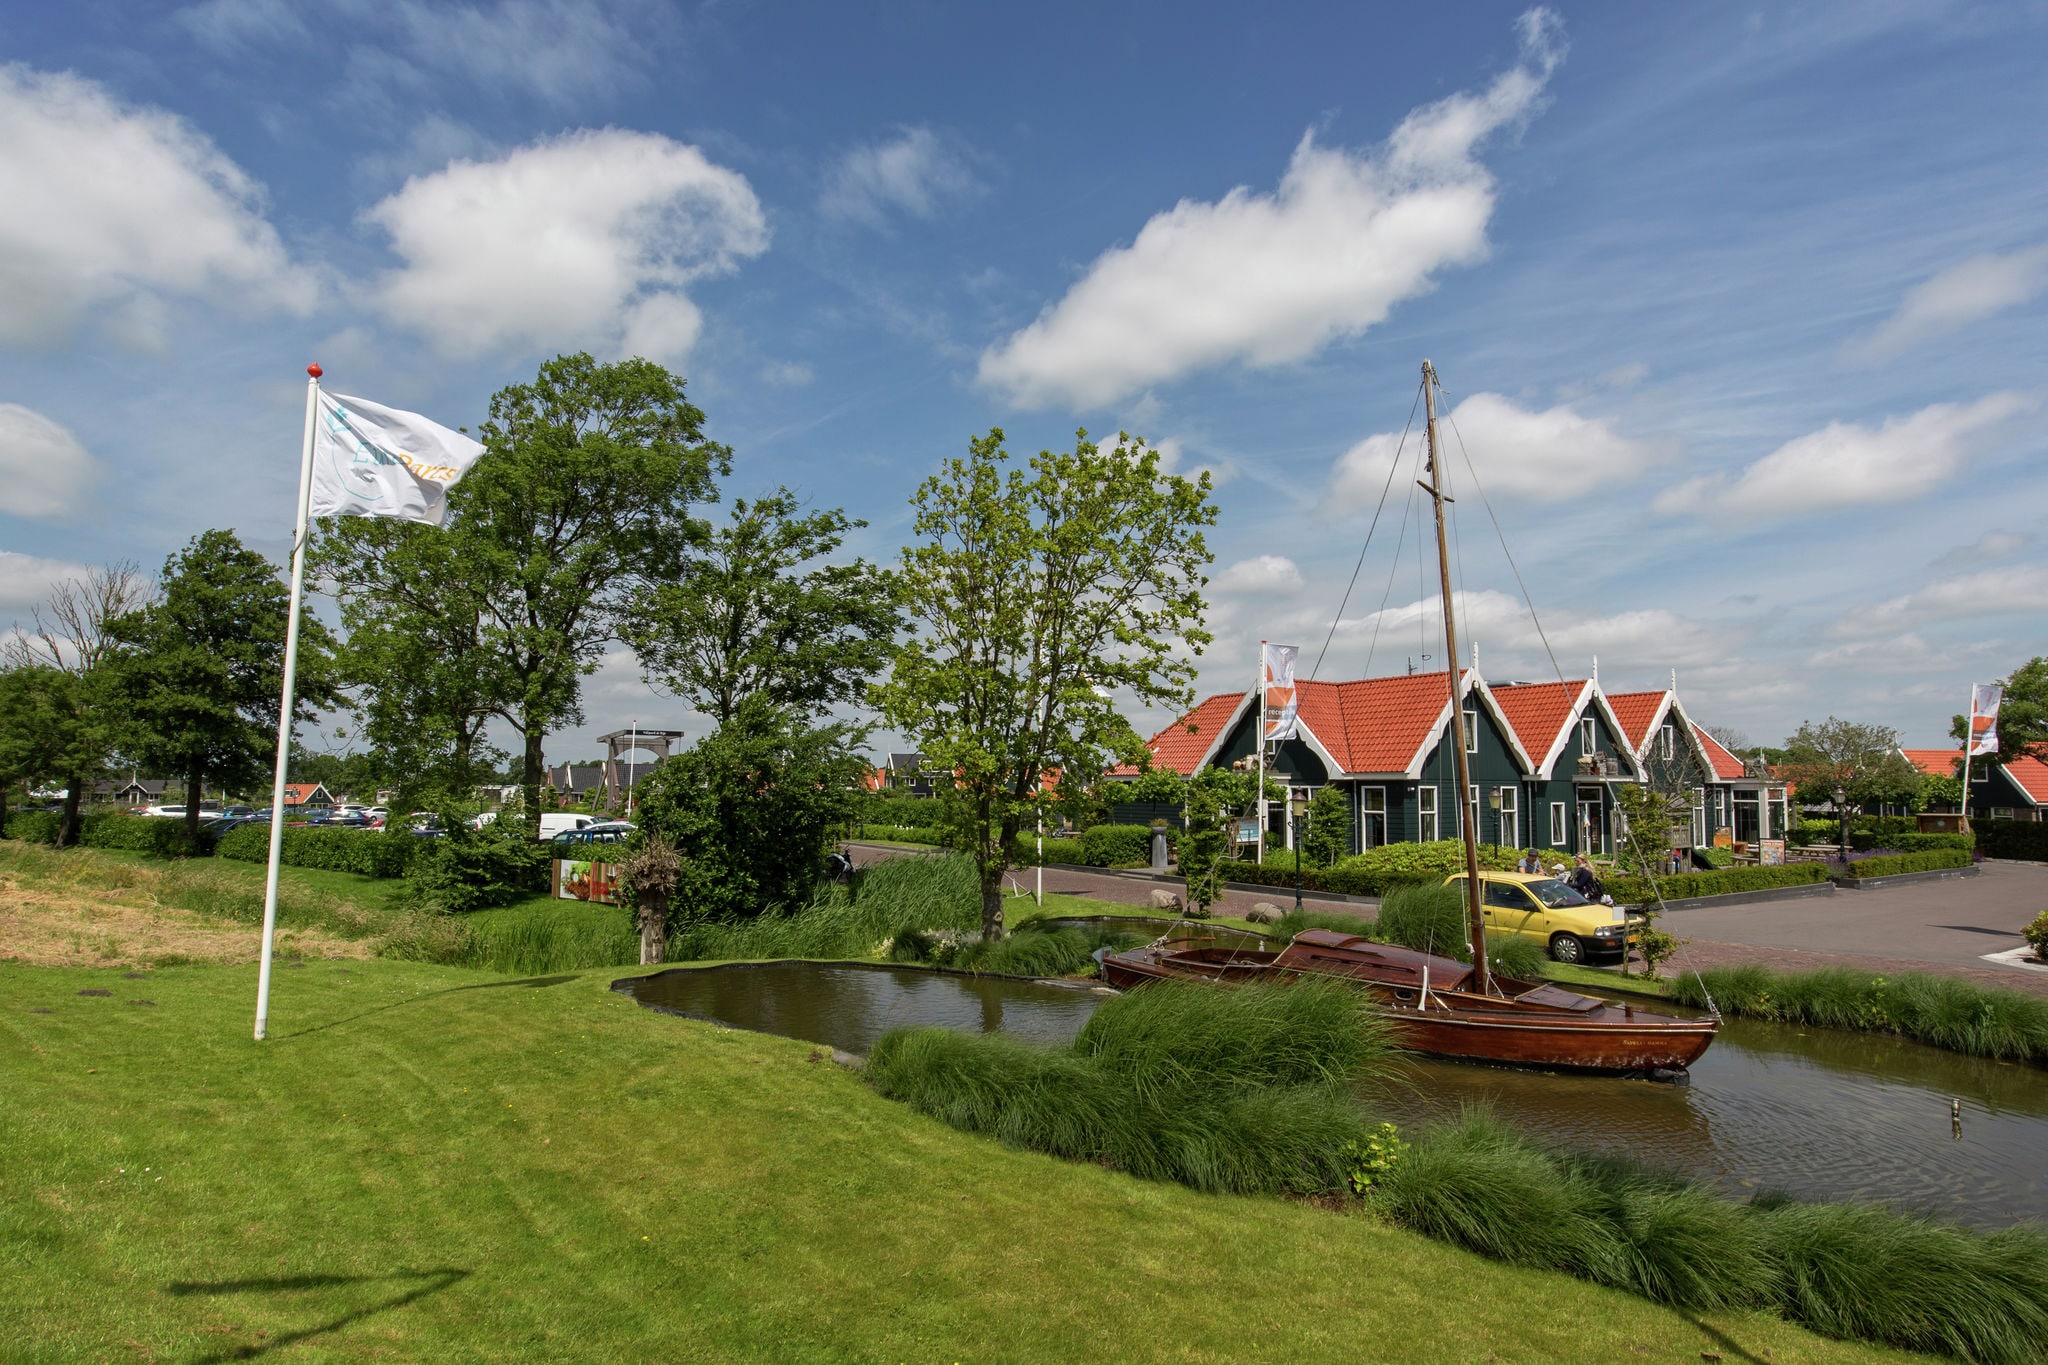 Ferienhaus im Zaanse-Stil, 15 km. von Alkmaar entfernt.